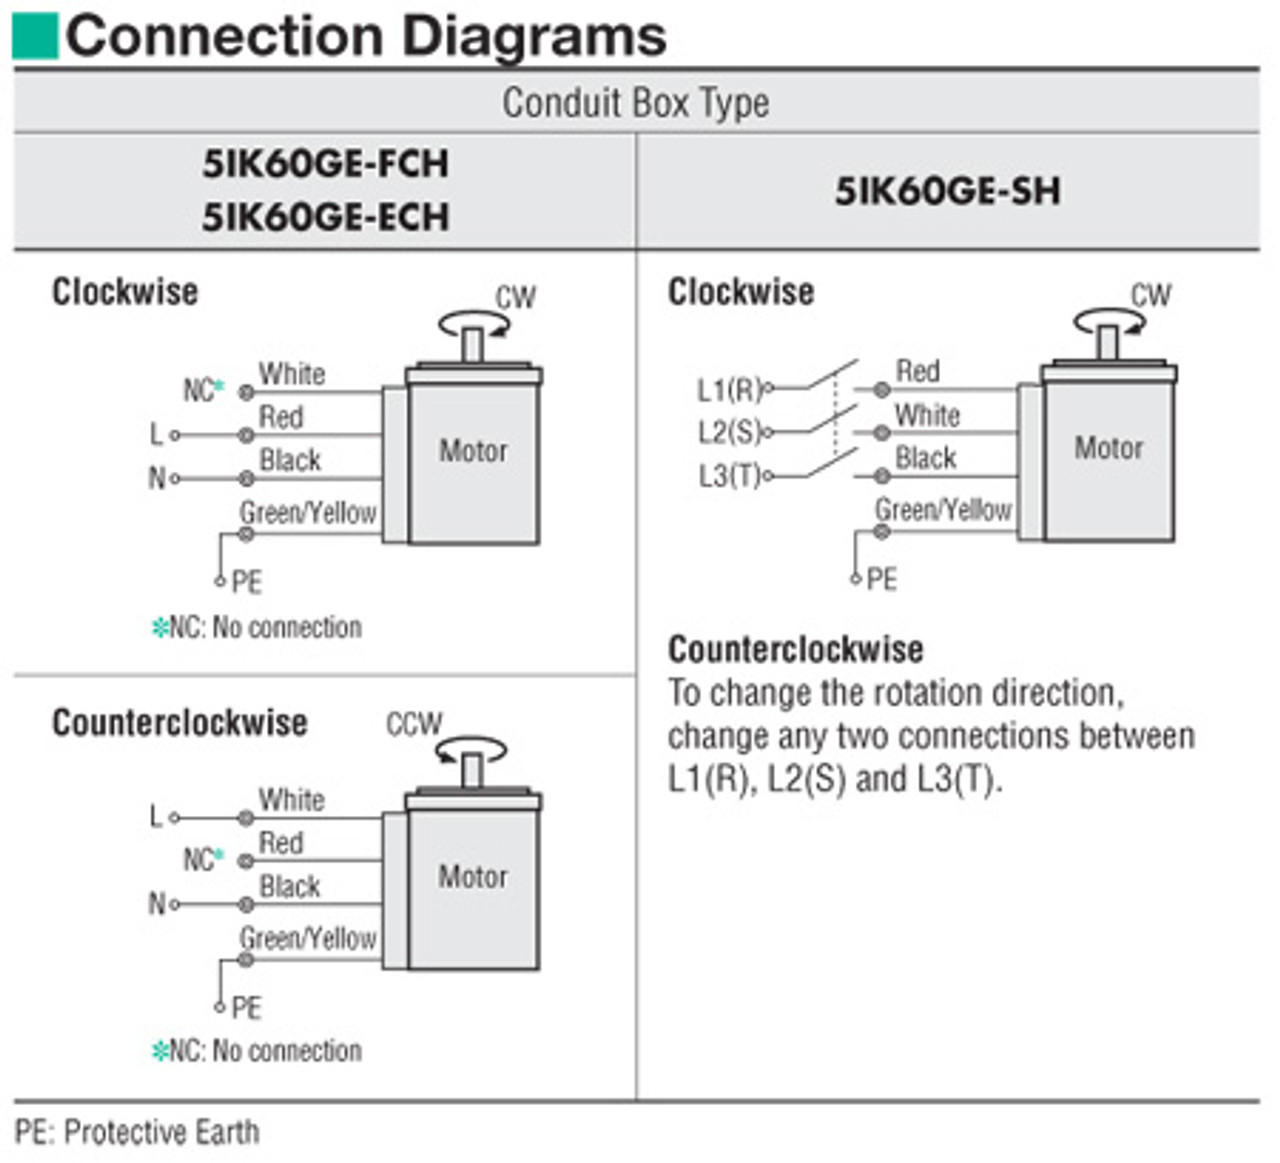 5IK60GE-FCH / 5GE30SA - Connection